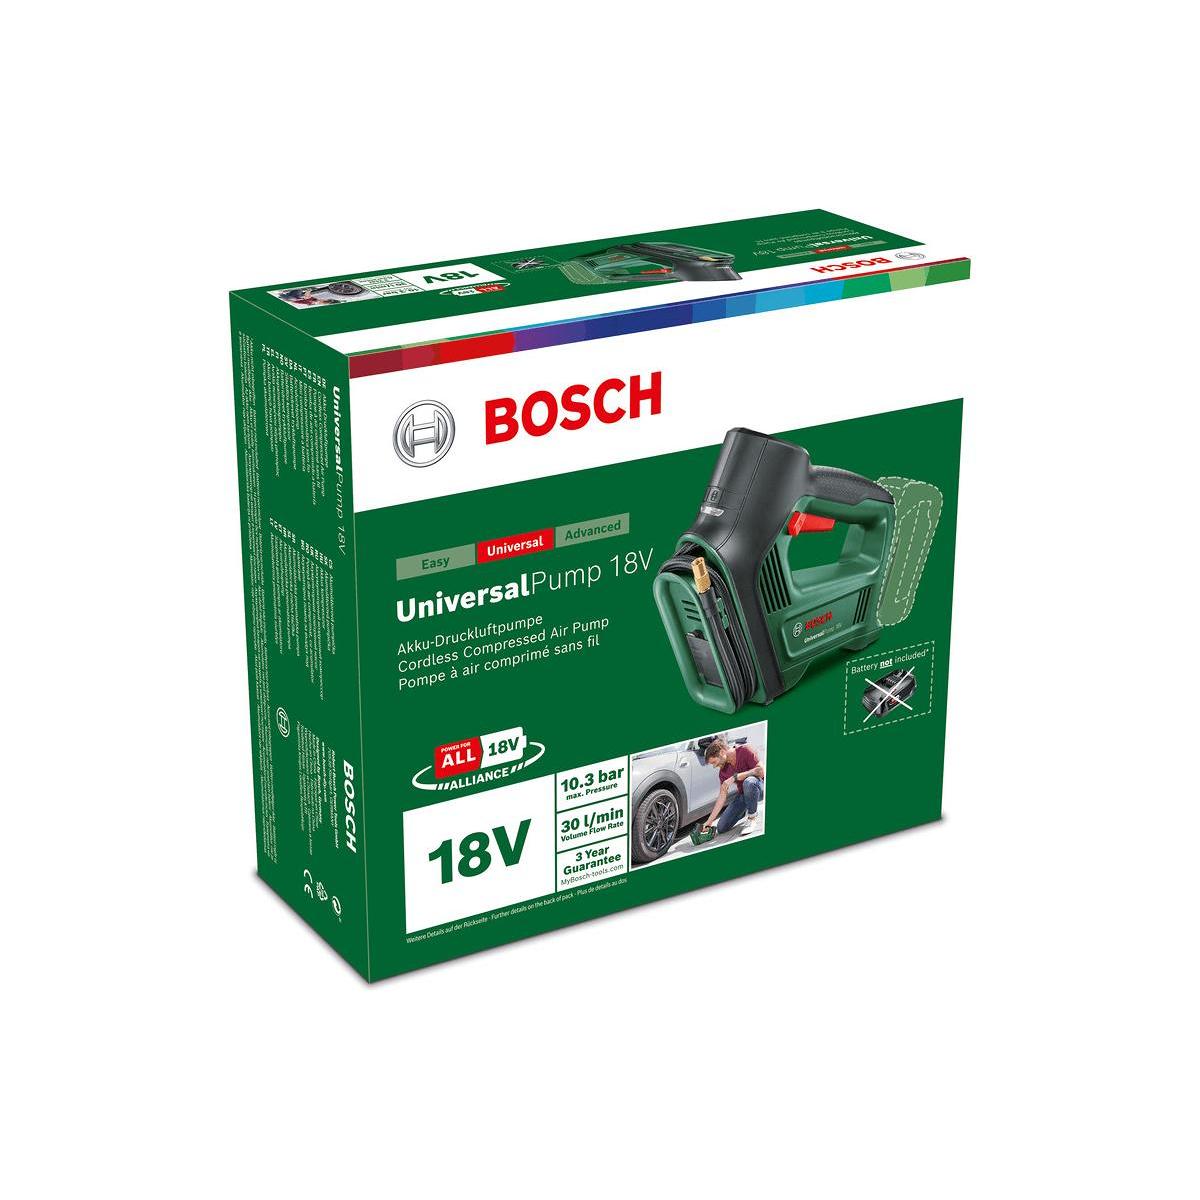 Bosch Universal Pump Akku-Druckluftpumpe, 18V, 150psi, 10,3bar bei